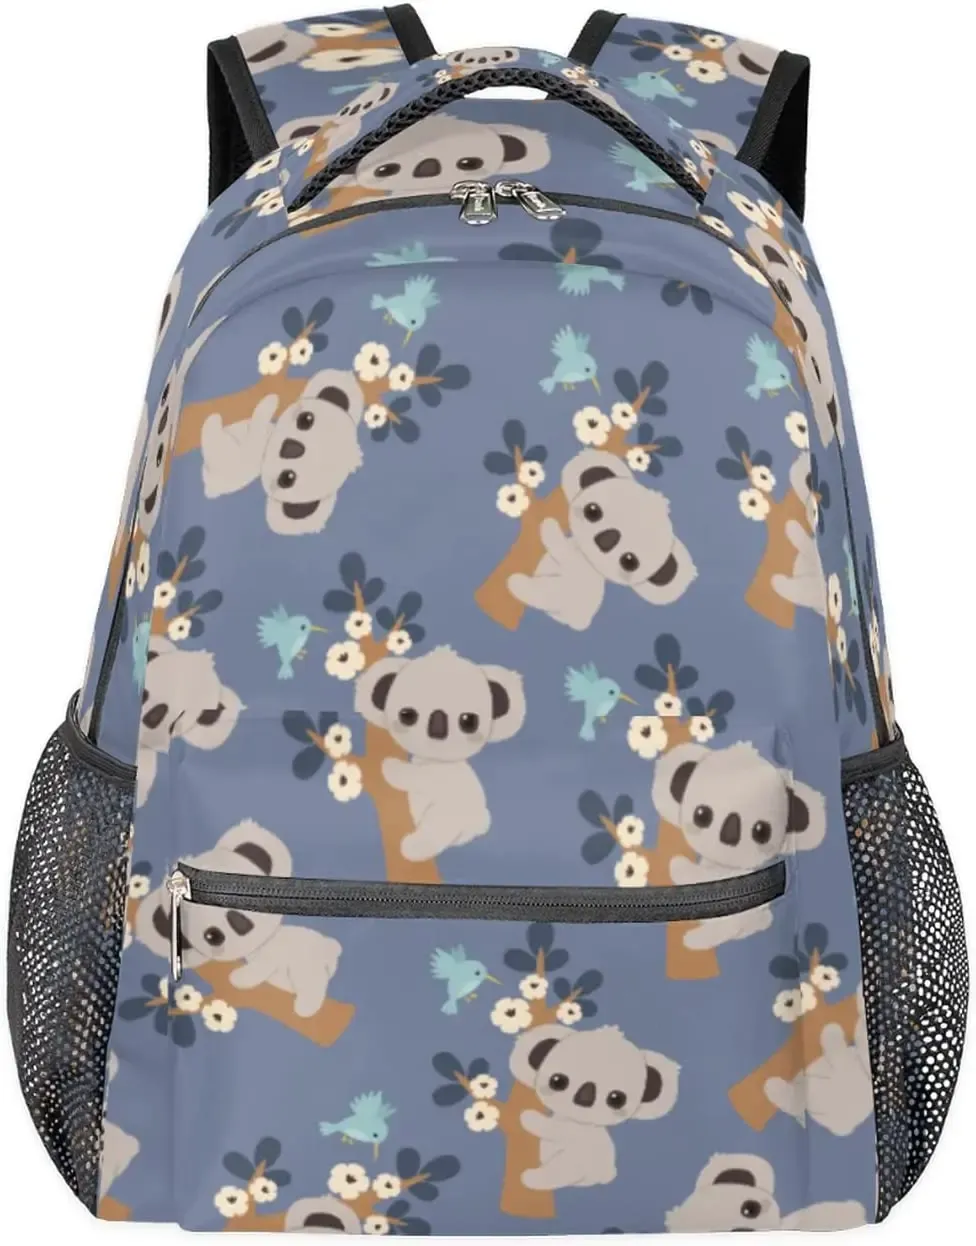 Väskor Söt koala skola ryggsäck för barn flickor pojkar, fågelblommor resor ryggsäck lättvikt skolväska student bokväska